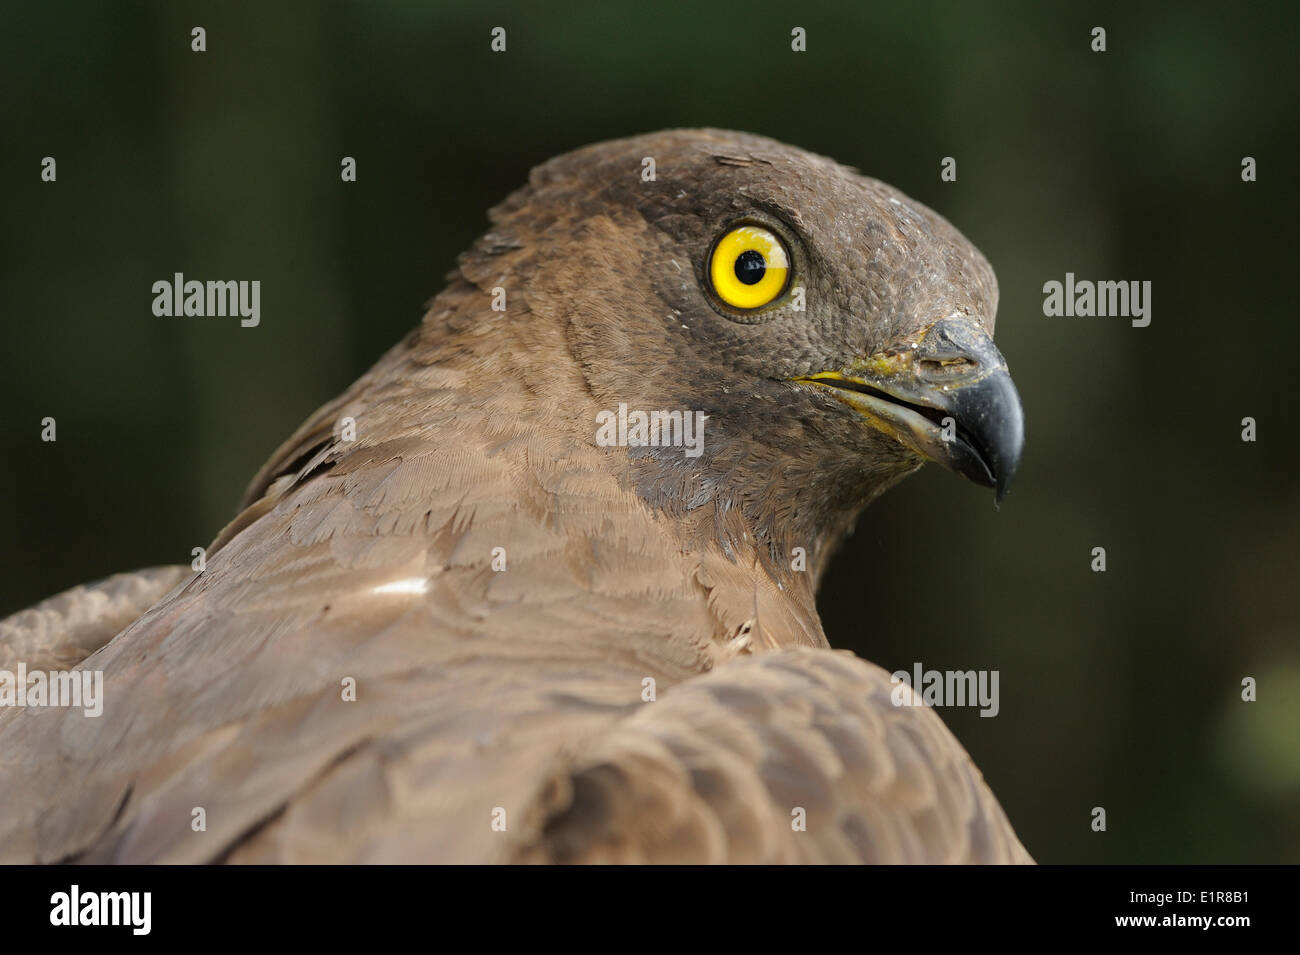 Colpo di Testa di una femmina di Falco Pecchiaiolo con il suo caratteristico occhio giallo e piccolo narice. Catturati per la fascettatura Foto Stock